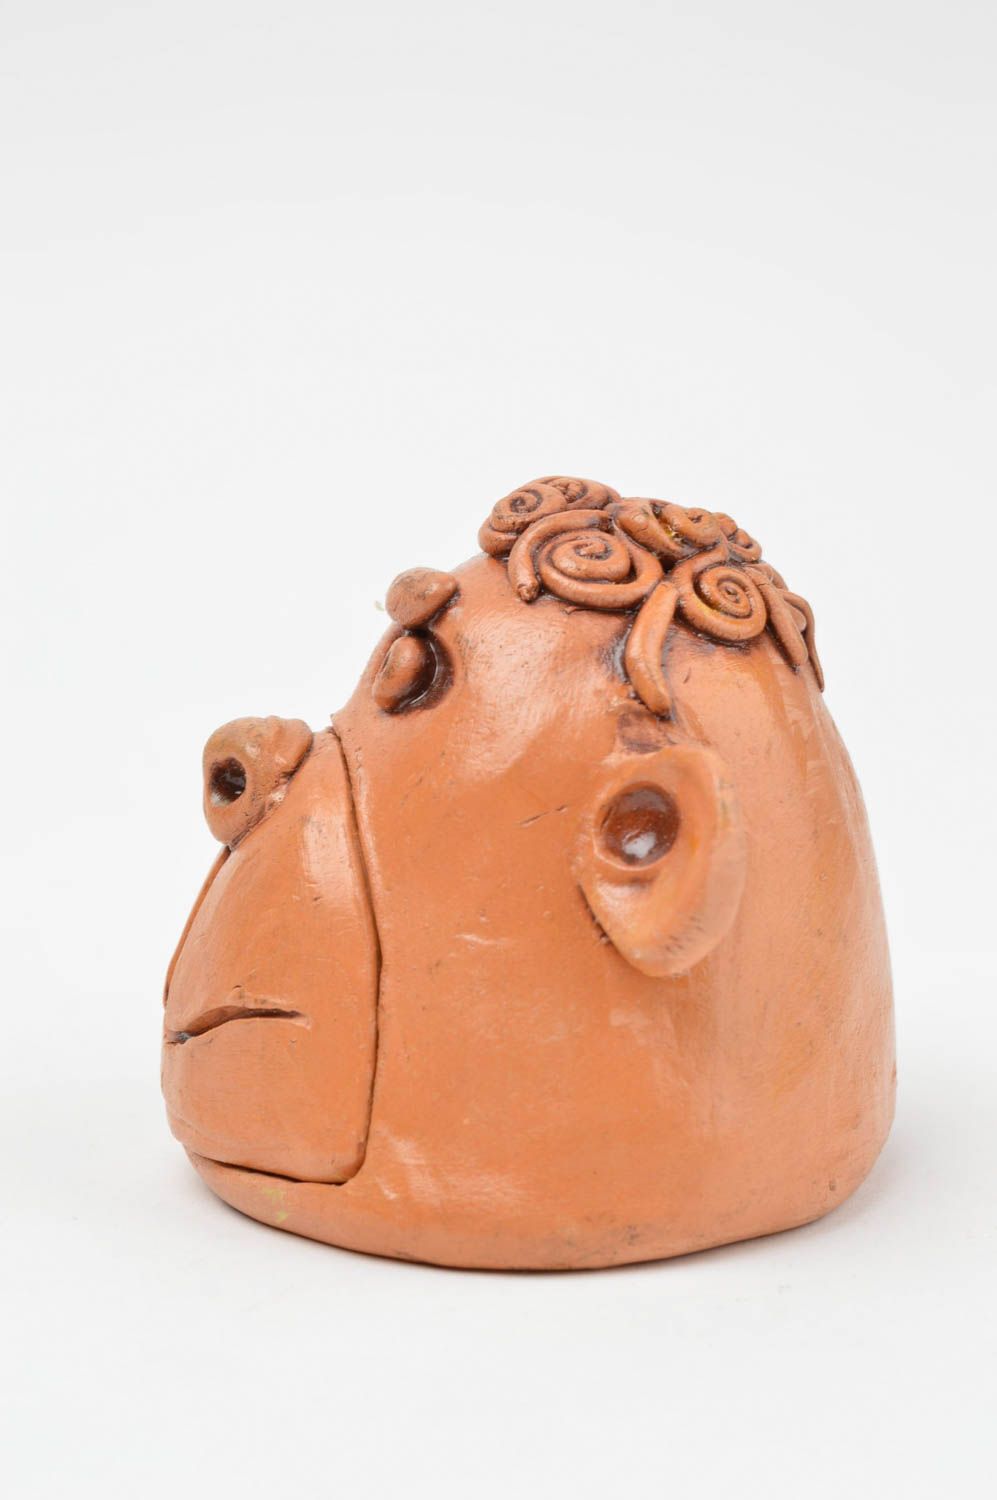 Авторская керамическая шкатулка ручной работы в форме обезьяны из красной глины фото 3